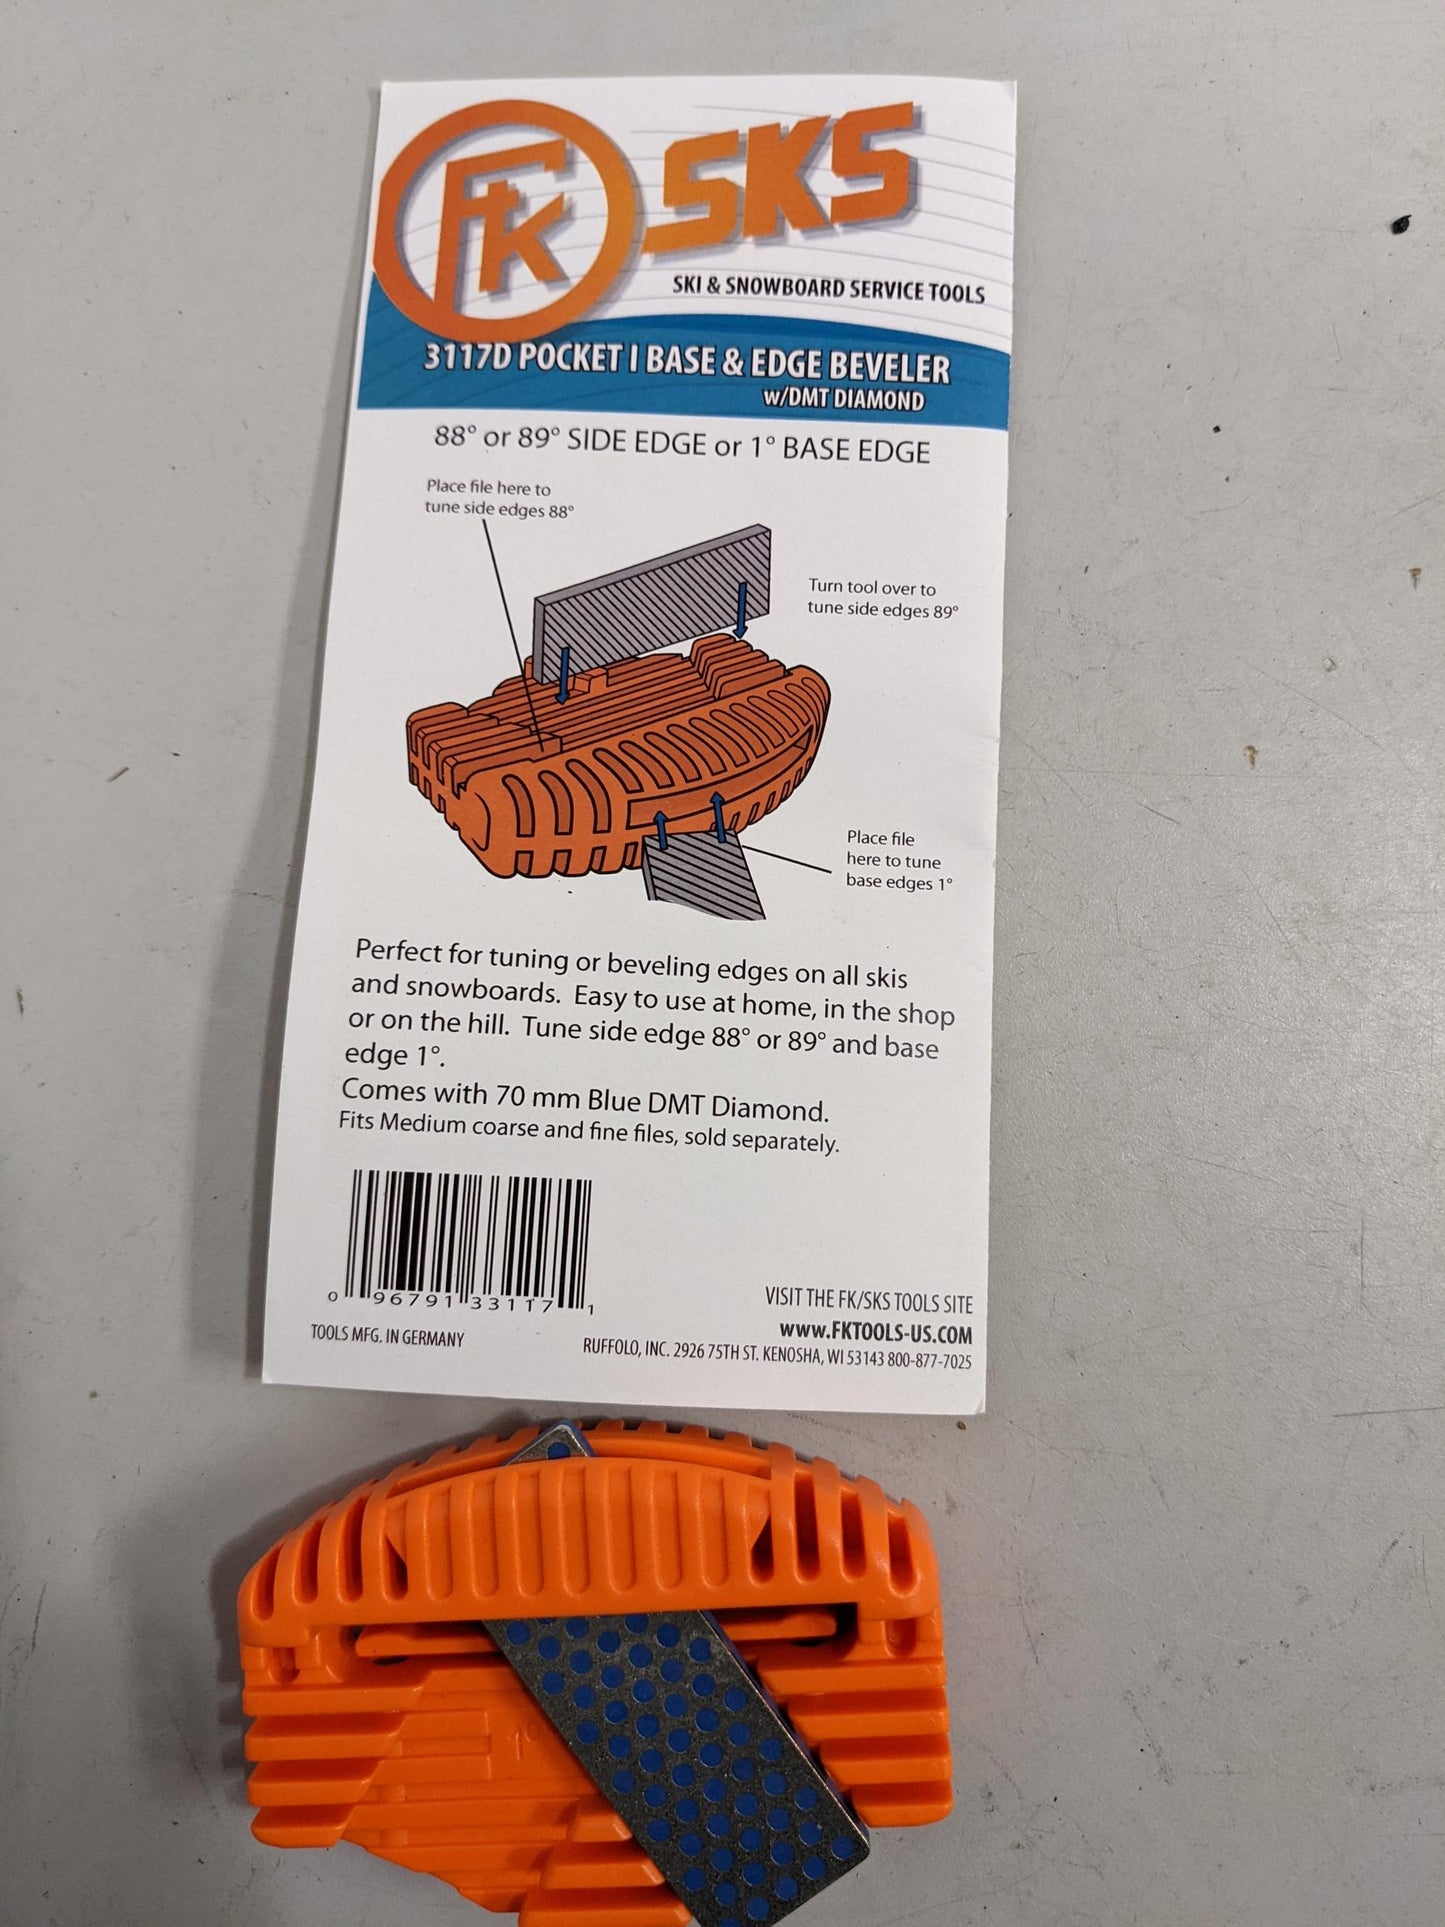 SKS 3117D Pocket Base & Edge Beveler Hand Held Orange New